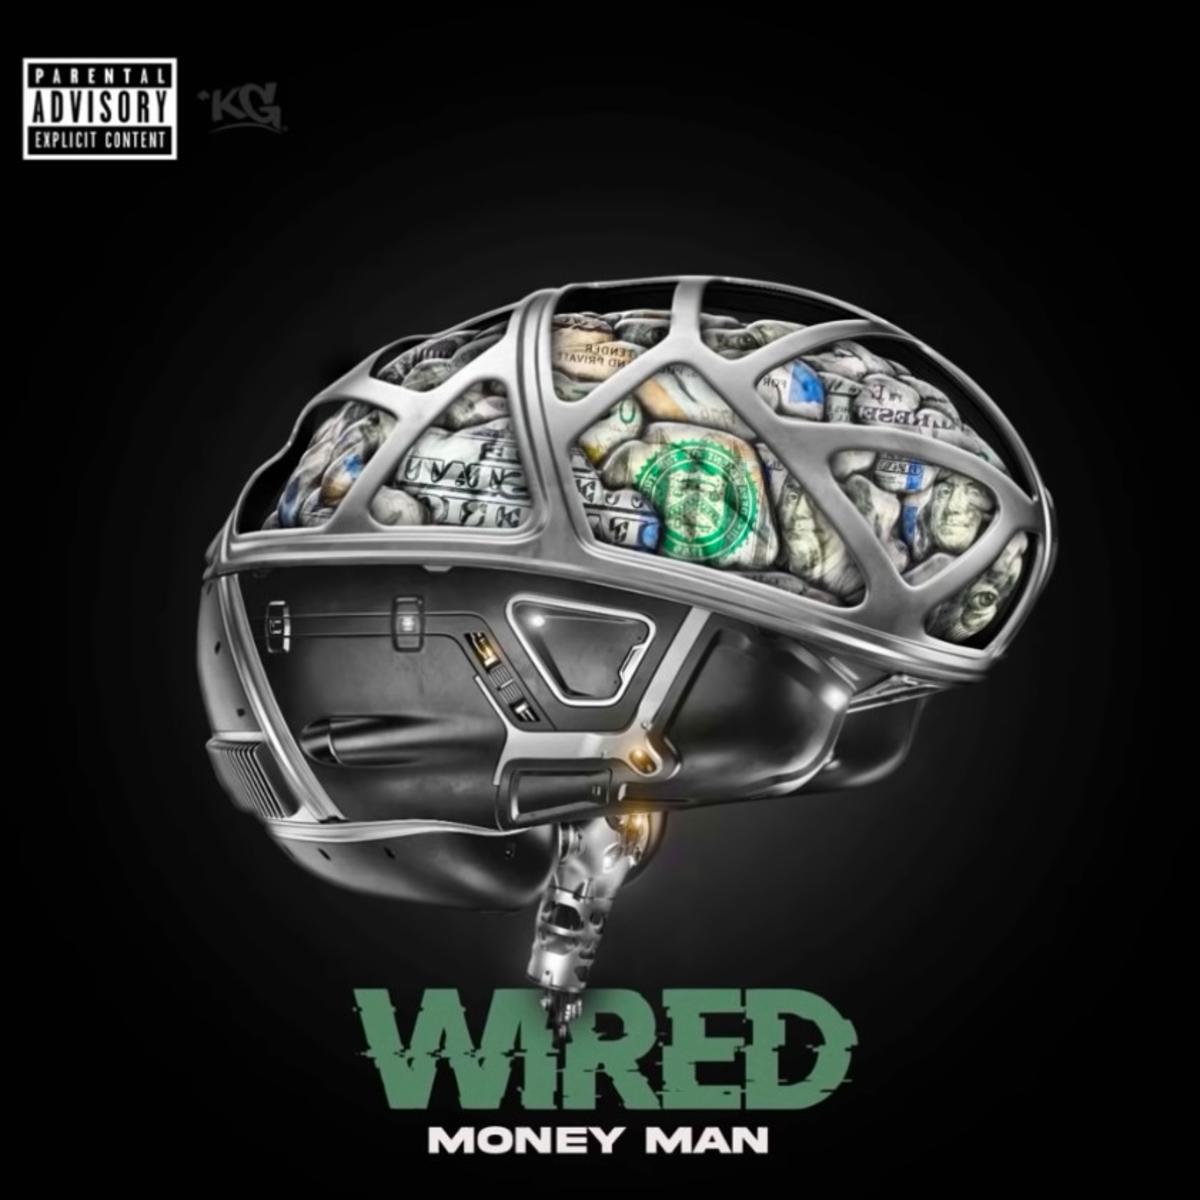 Money Man – “Wired” [Audio]